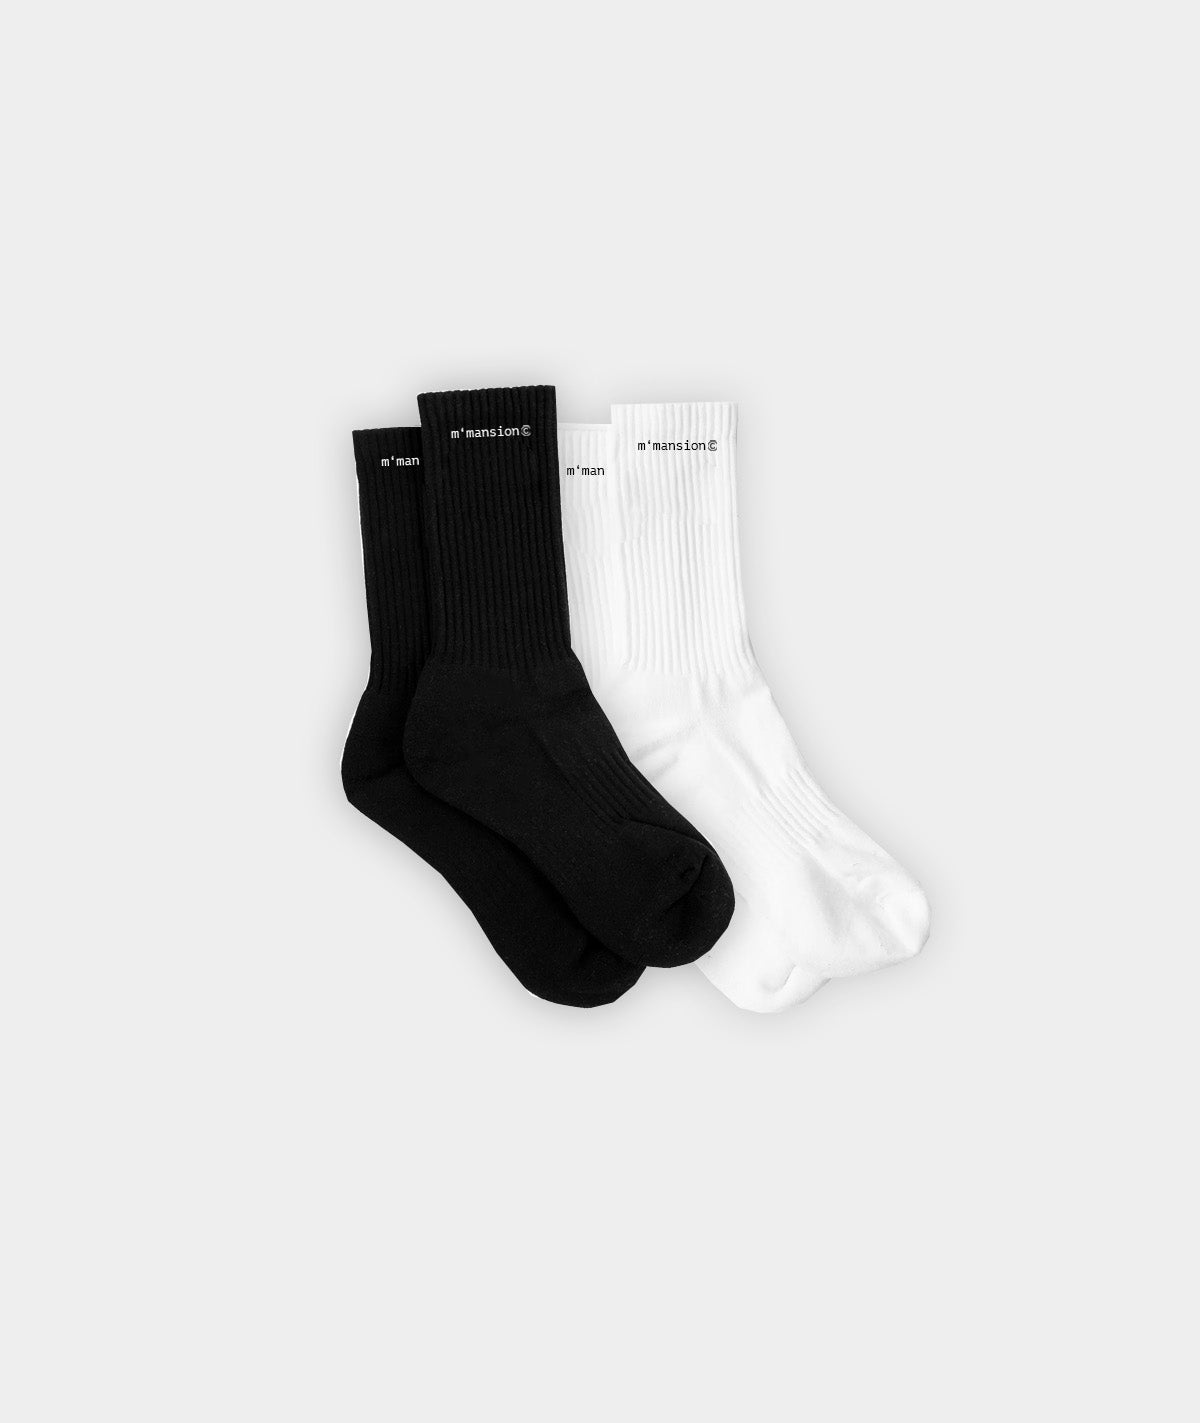 Socks (2 pack)